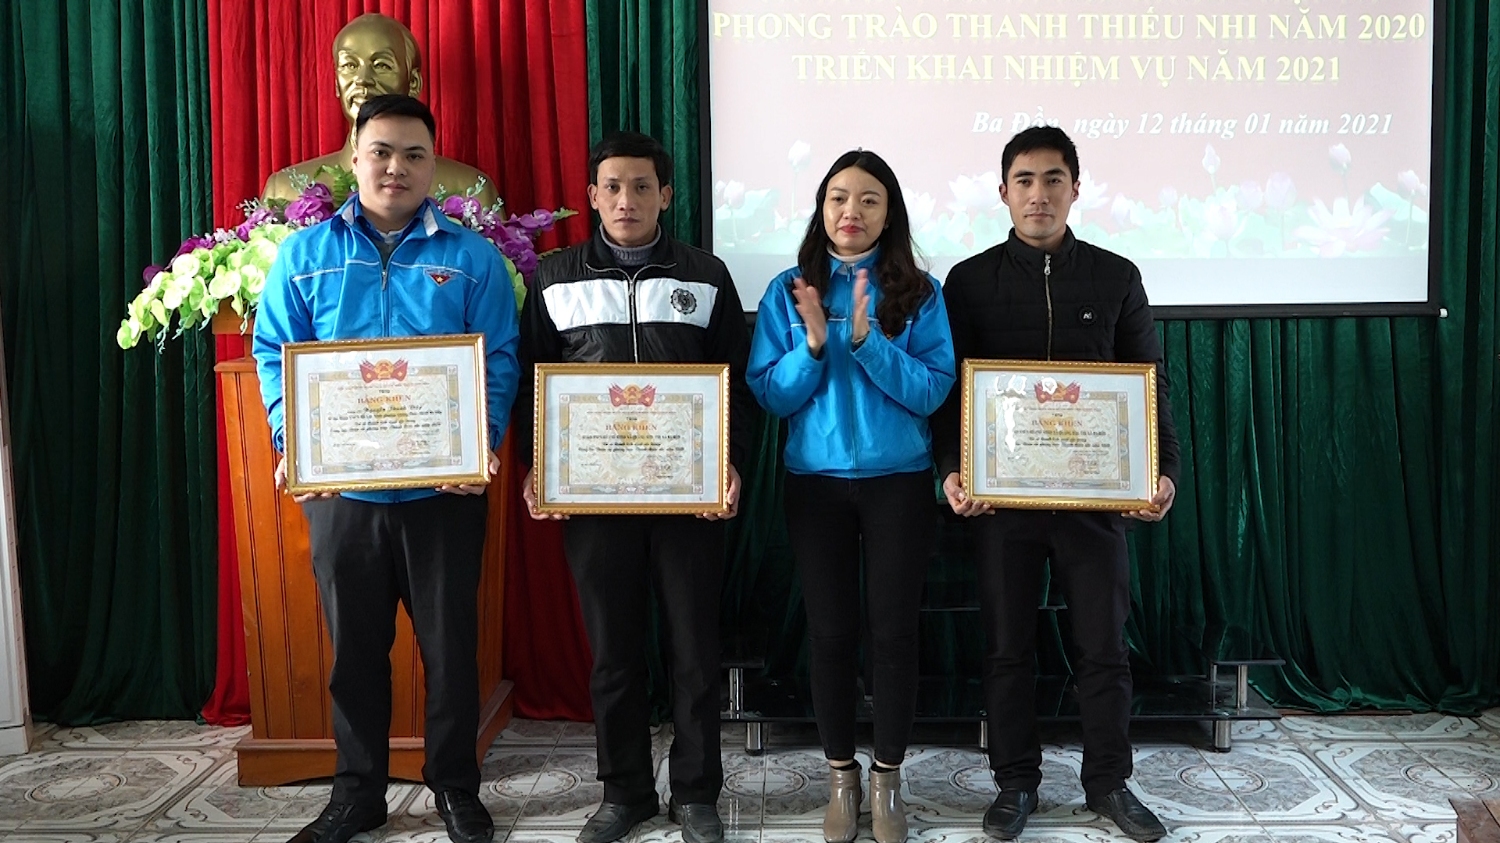 Ban chấp hành TW Đoàn TNCS Hồ Chí Minh tặng bằng khen cho các tập thể và cá nhân có thành tích xuất sắc trong công tác Đoàn và phong trào thanh thiếu nhi năm 2020